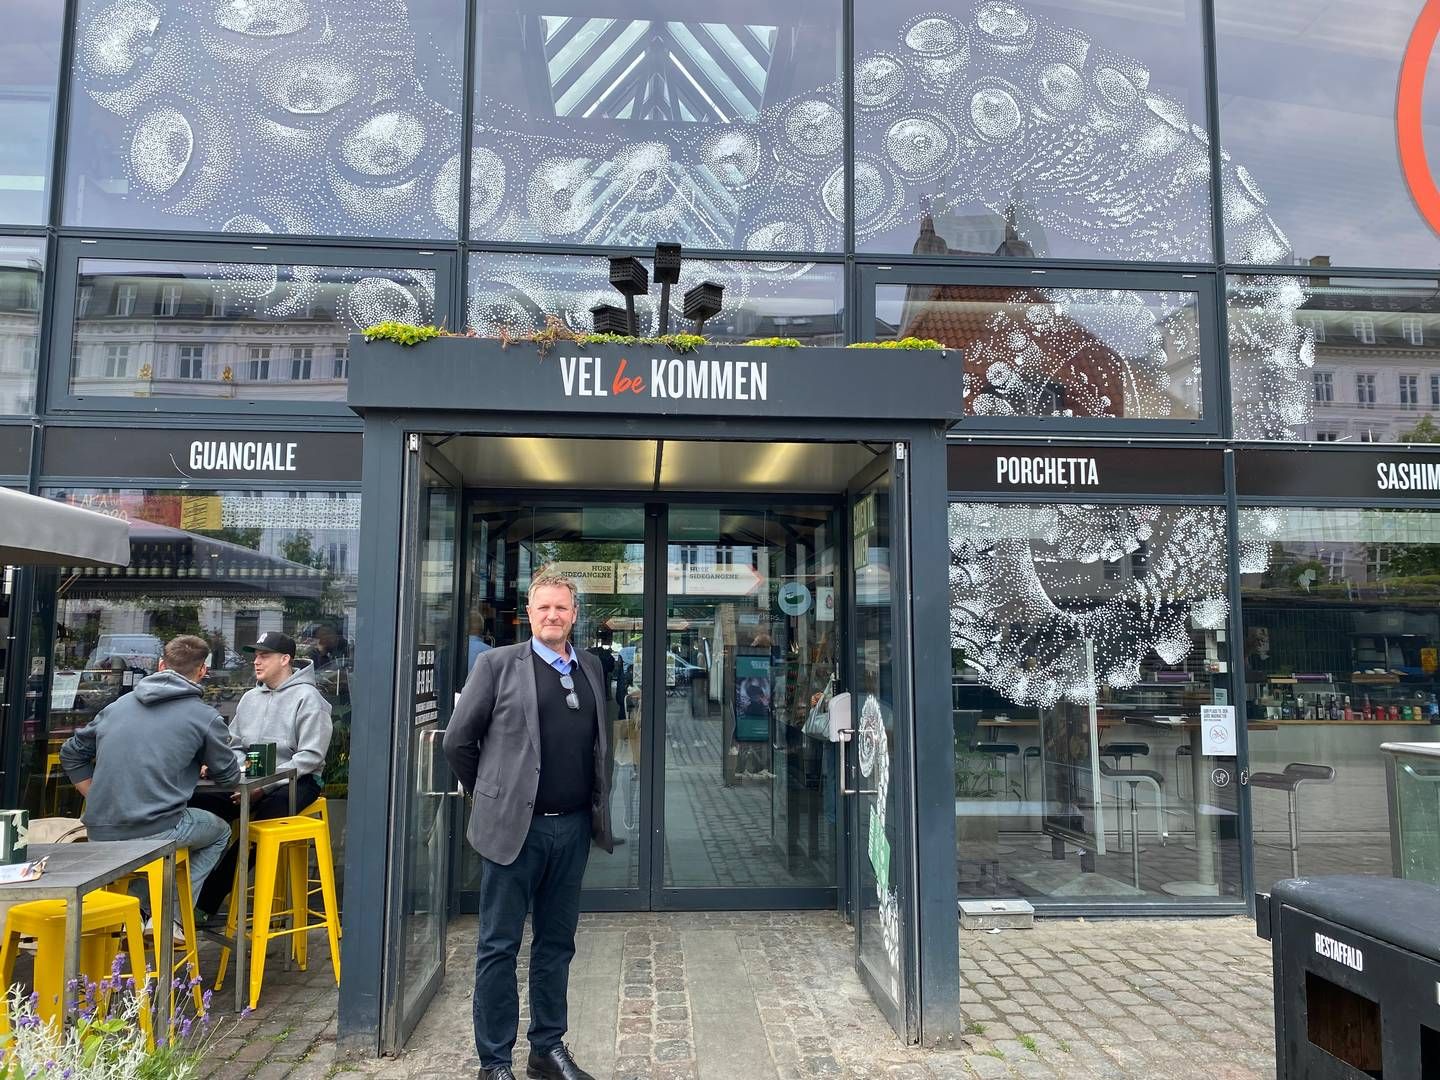 Adm. direktør Thomas Høy vil med Kalus nye butik i Torvehallerne blandt andet lære danskerne at bruge mere vildt i madlavningen. | Photo: Simone Scheuer-Hansen